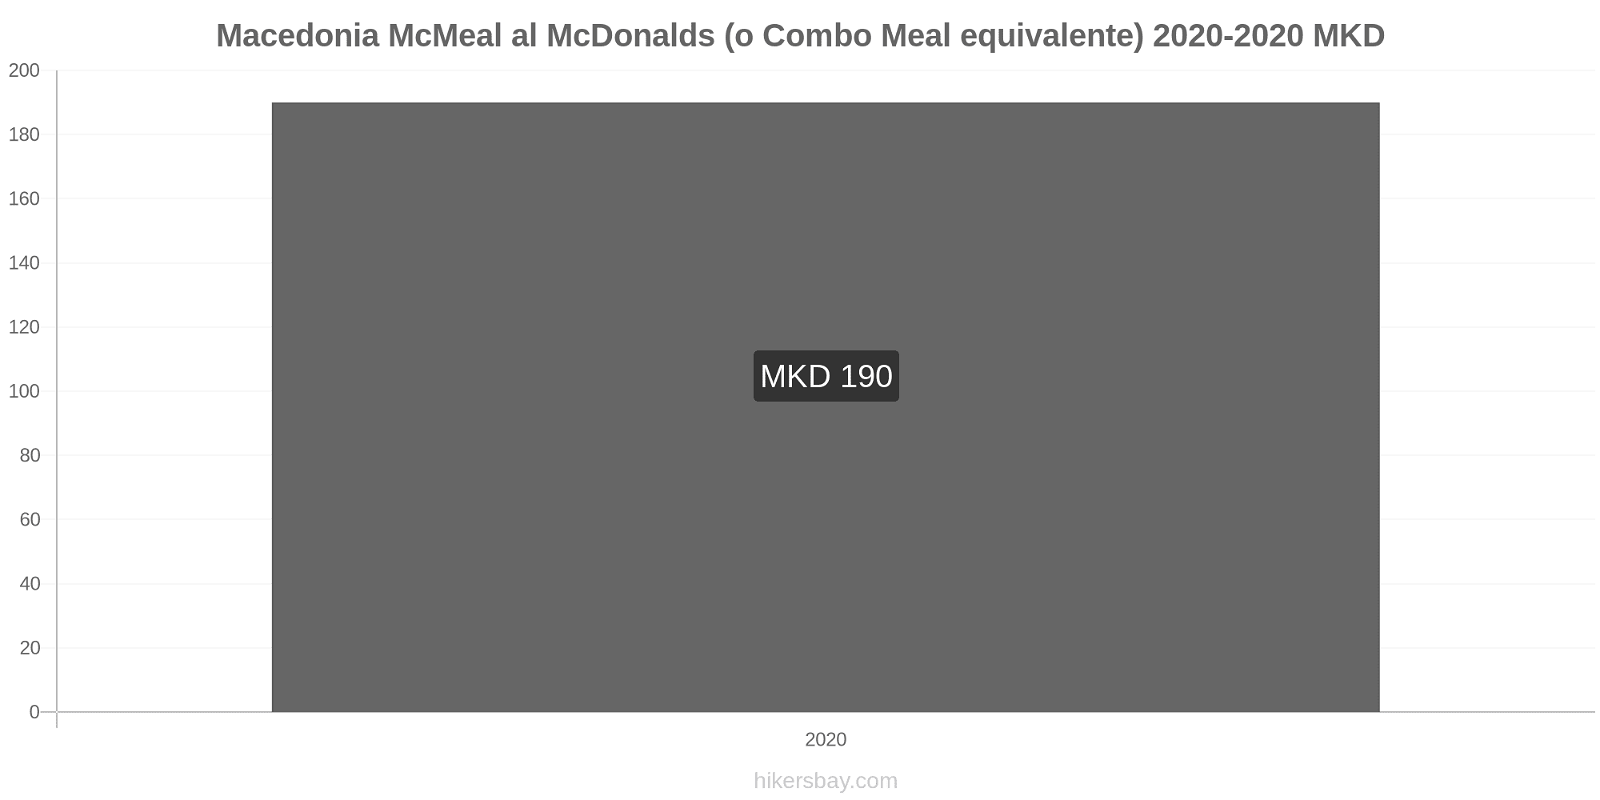 Macedonia variazioni di prezzo McMeal al McDonalds (o in un equivalente fastfood) hikersbay.com